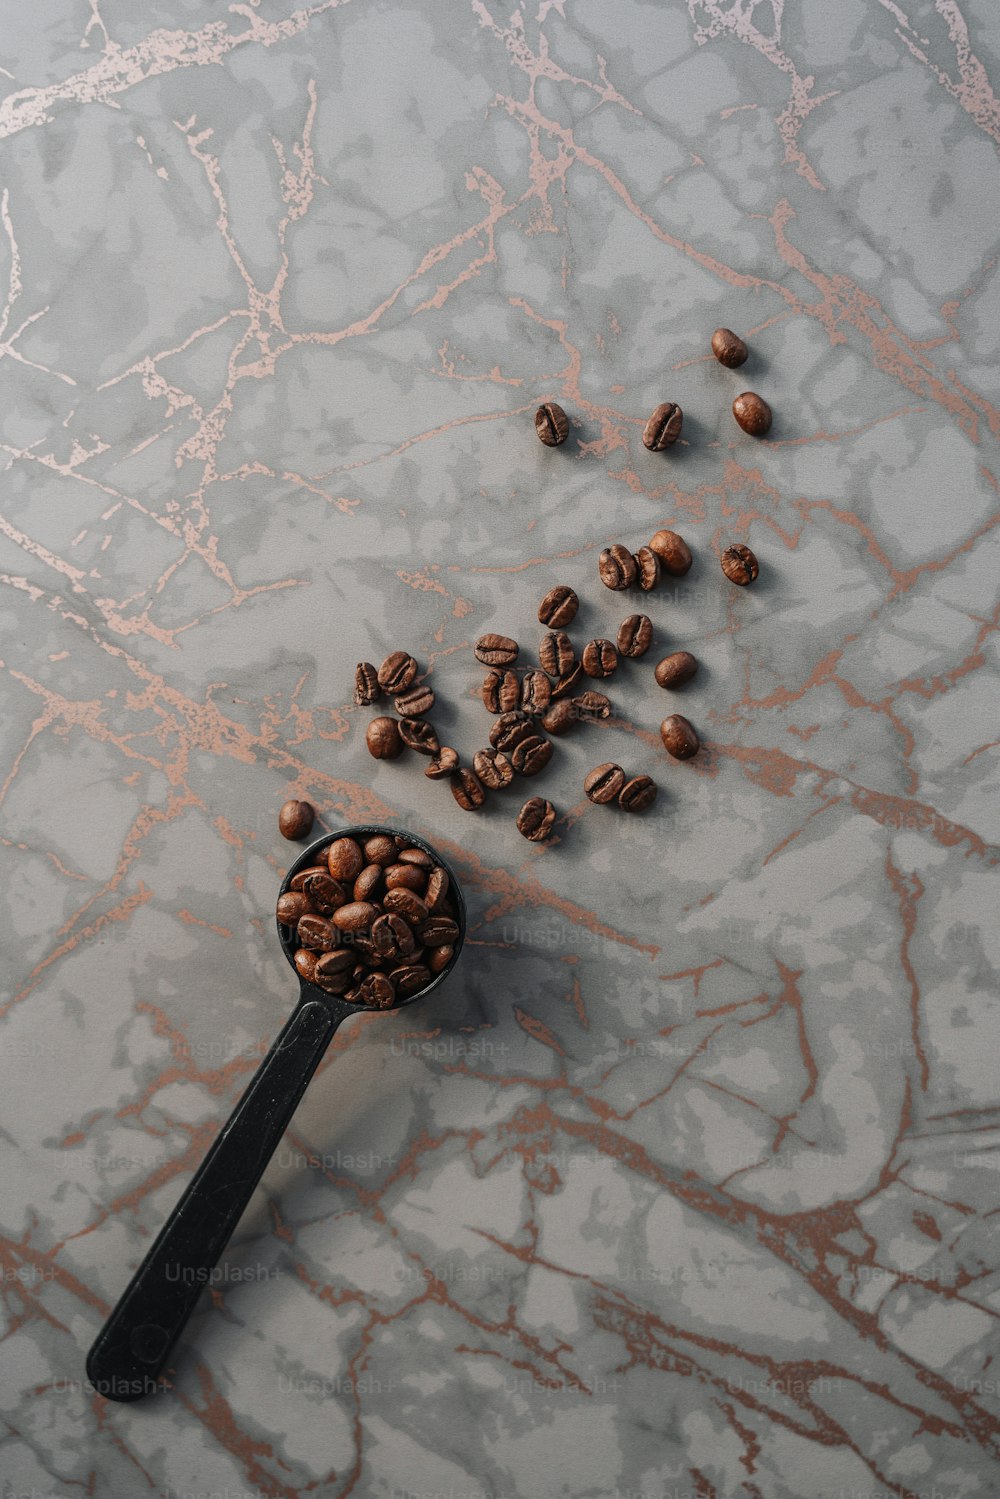 Ein Löffel voll Kaffeebohnen auf einer Marmoroberfläche